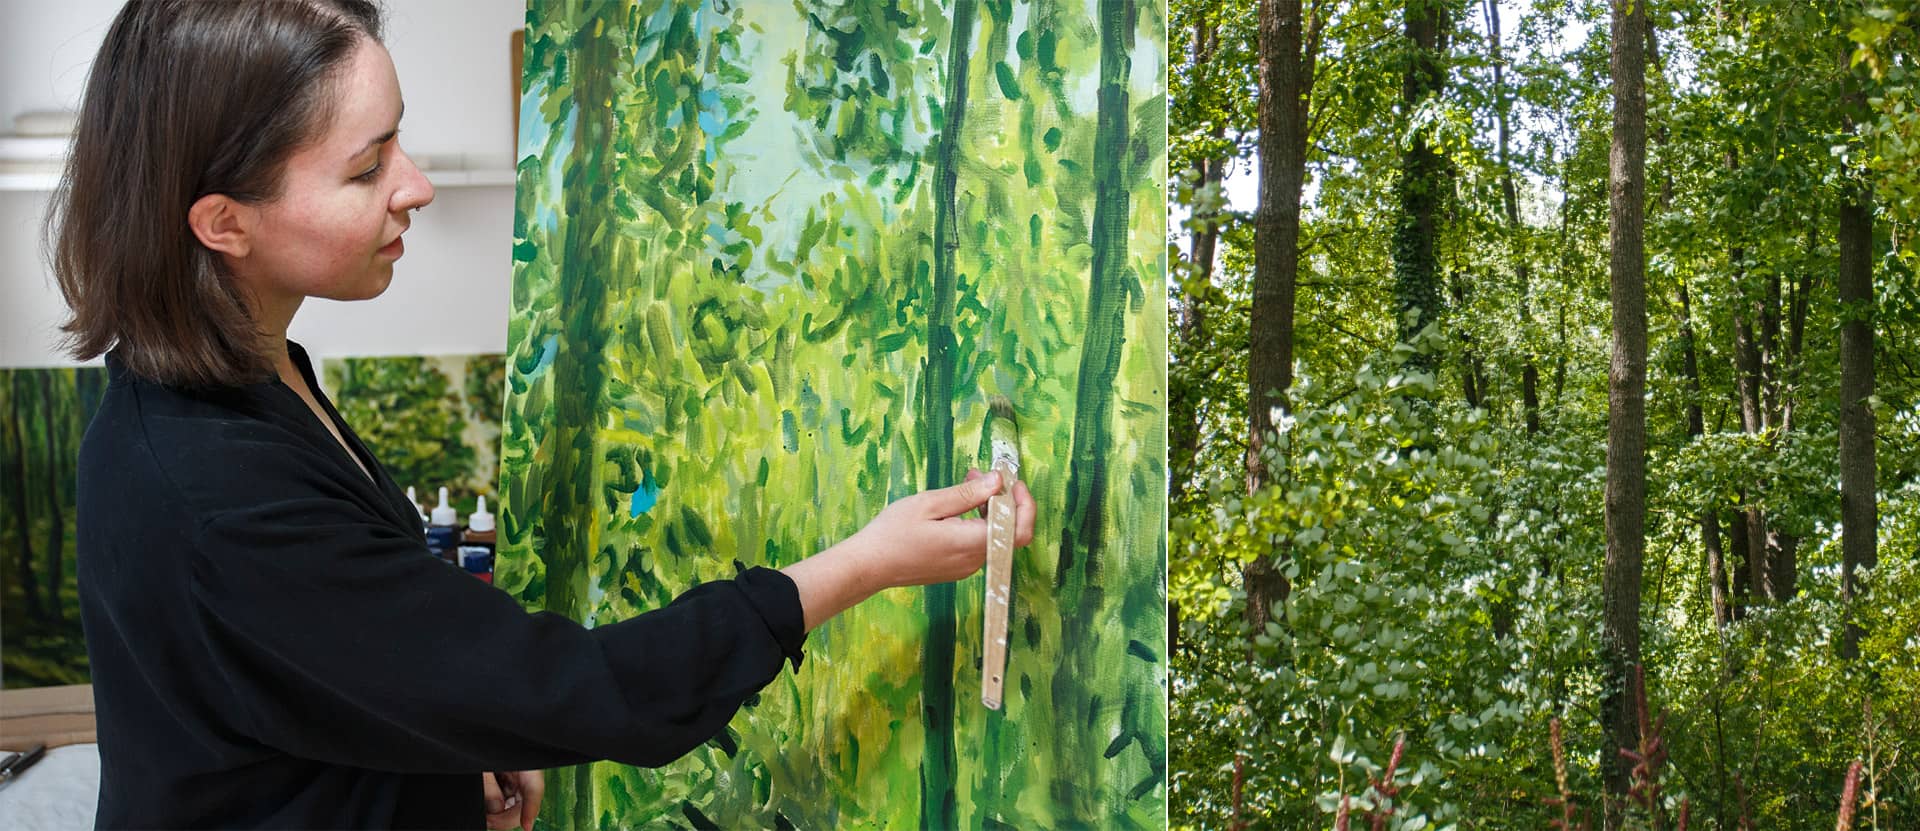 Die Künstlerin Anja Dommel kreiert Waldgemälde, inspiriert von der Philosophie des Biophilic Design